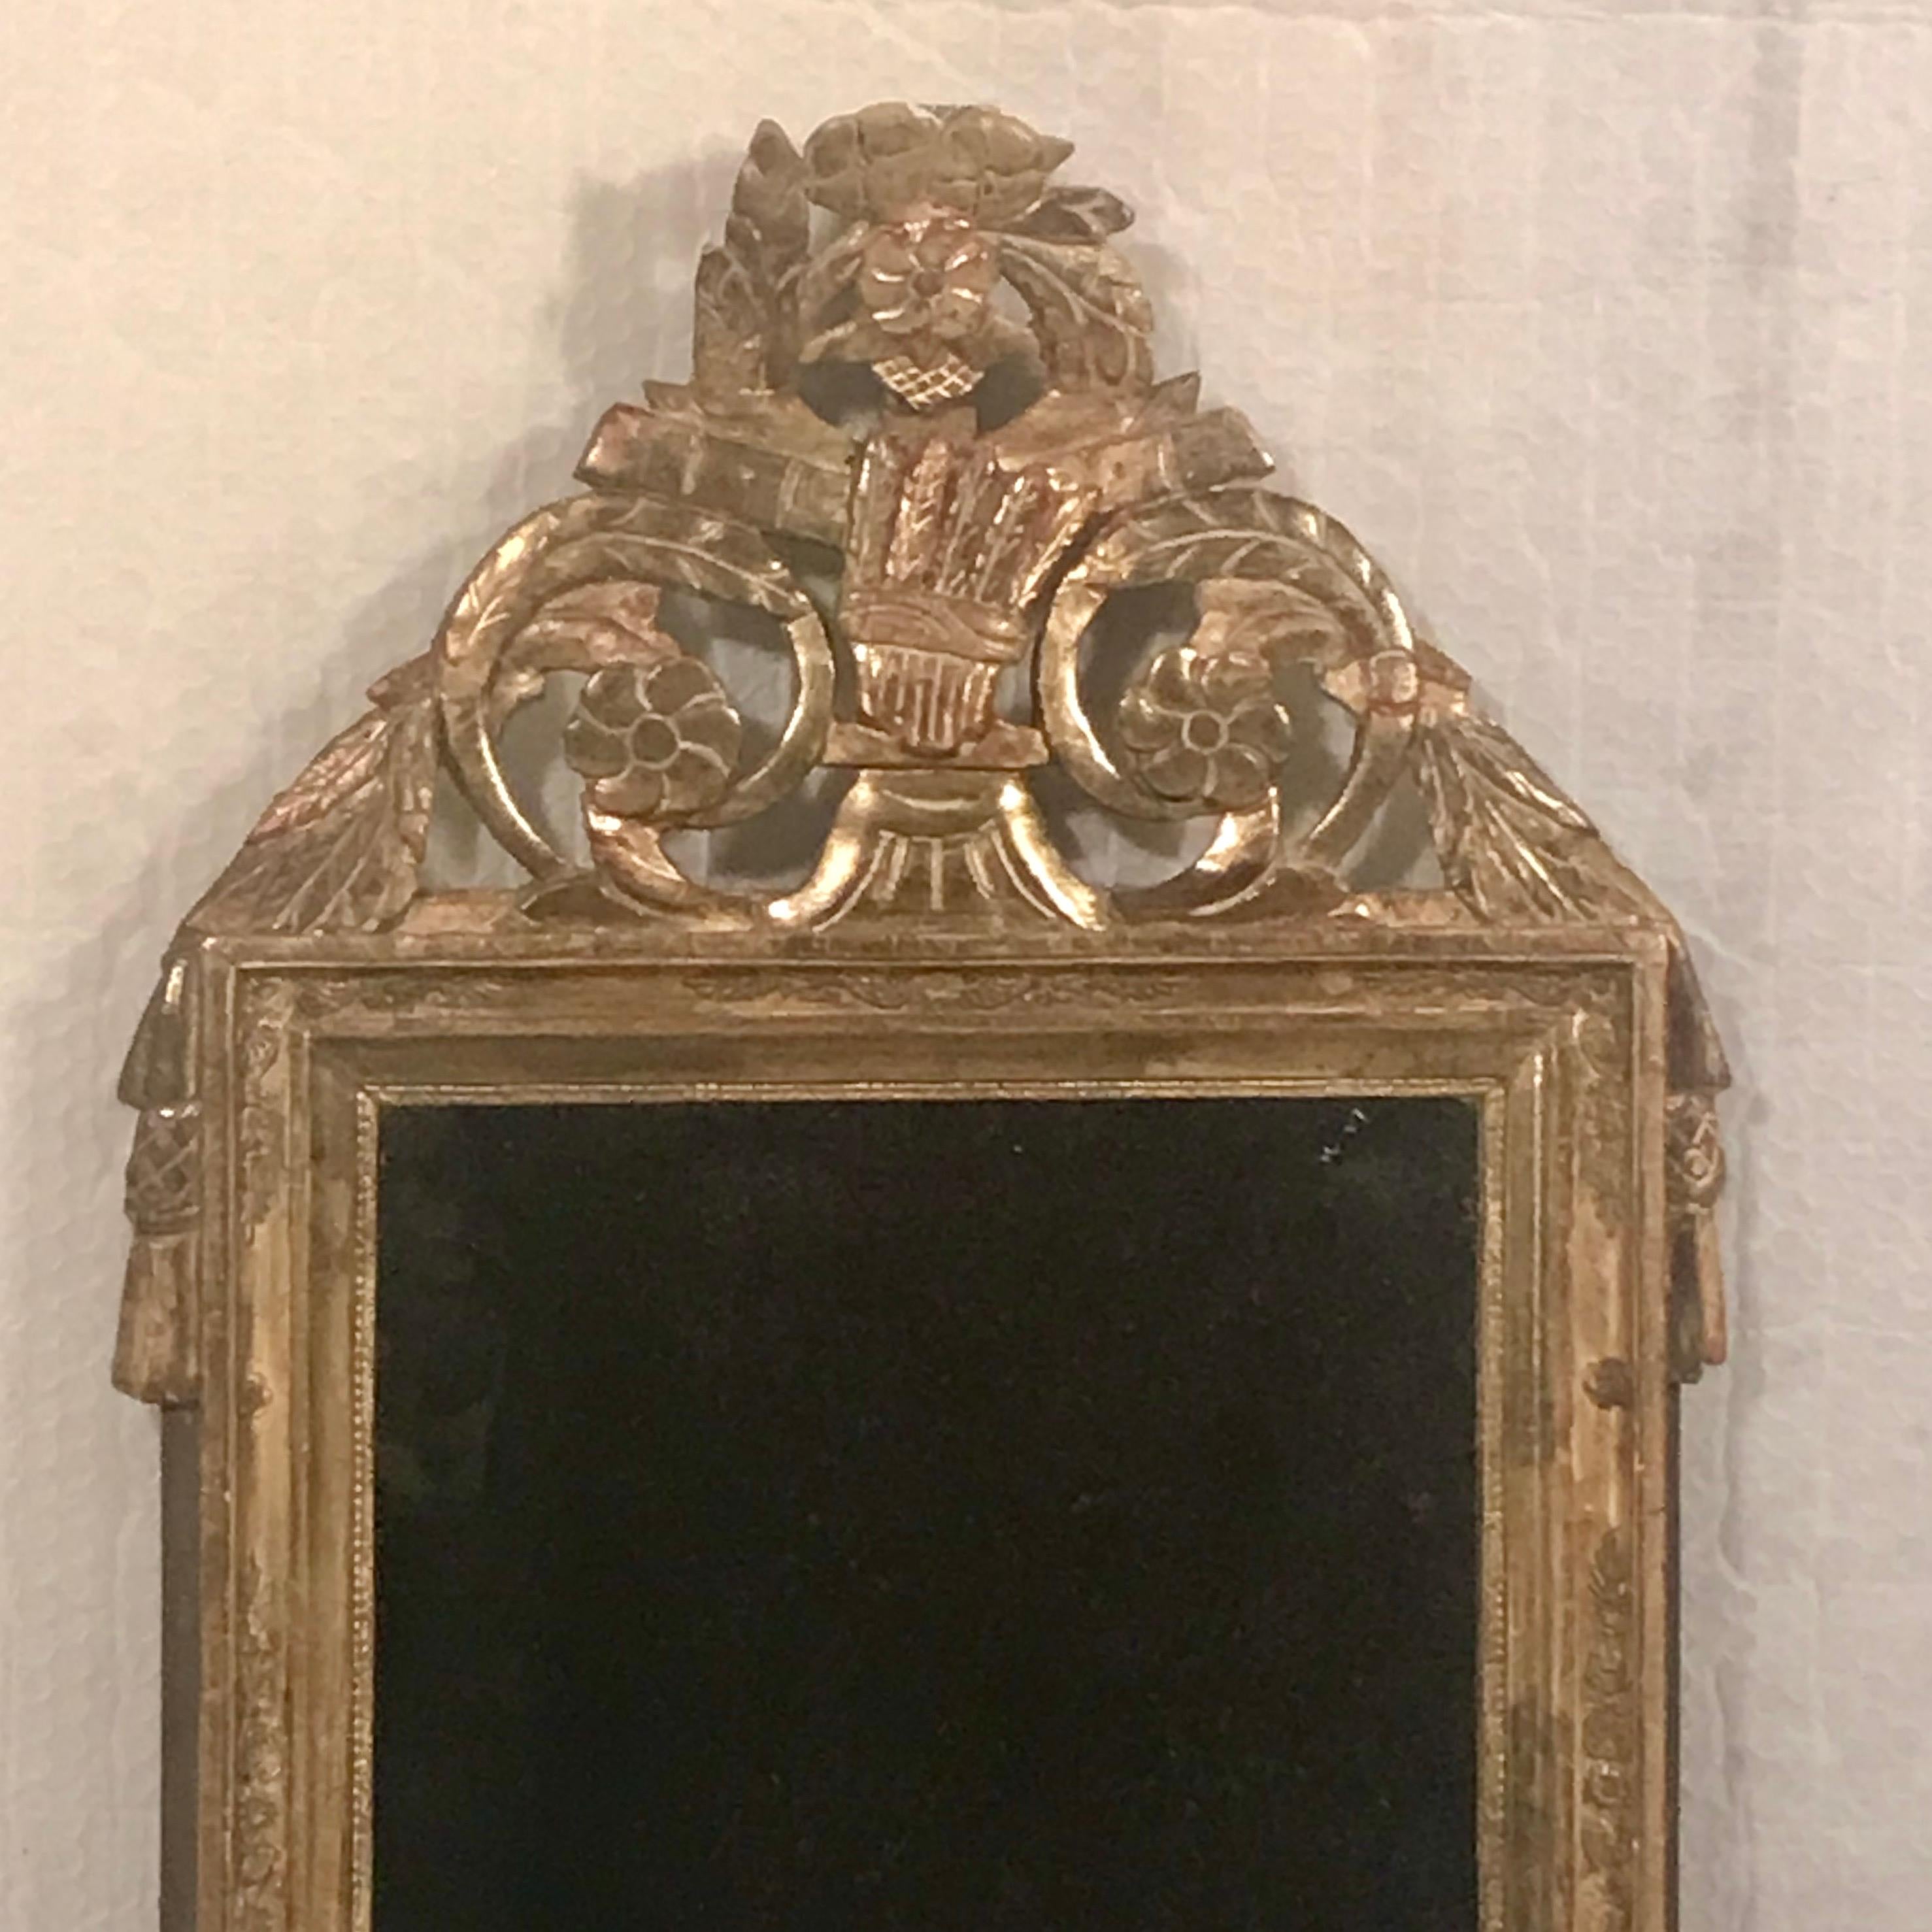 Entrez dans le monde somptueux de l'artisanat français avec notre miroir en bois doré des années 1780-1800, méticuleusement préservé. Cette pièce exquise incarne l'opulence et la sophistication de son époque, avec une symphonie de détails sculptés à